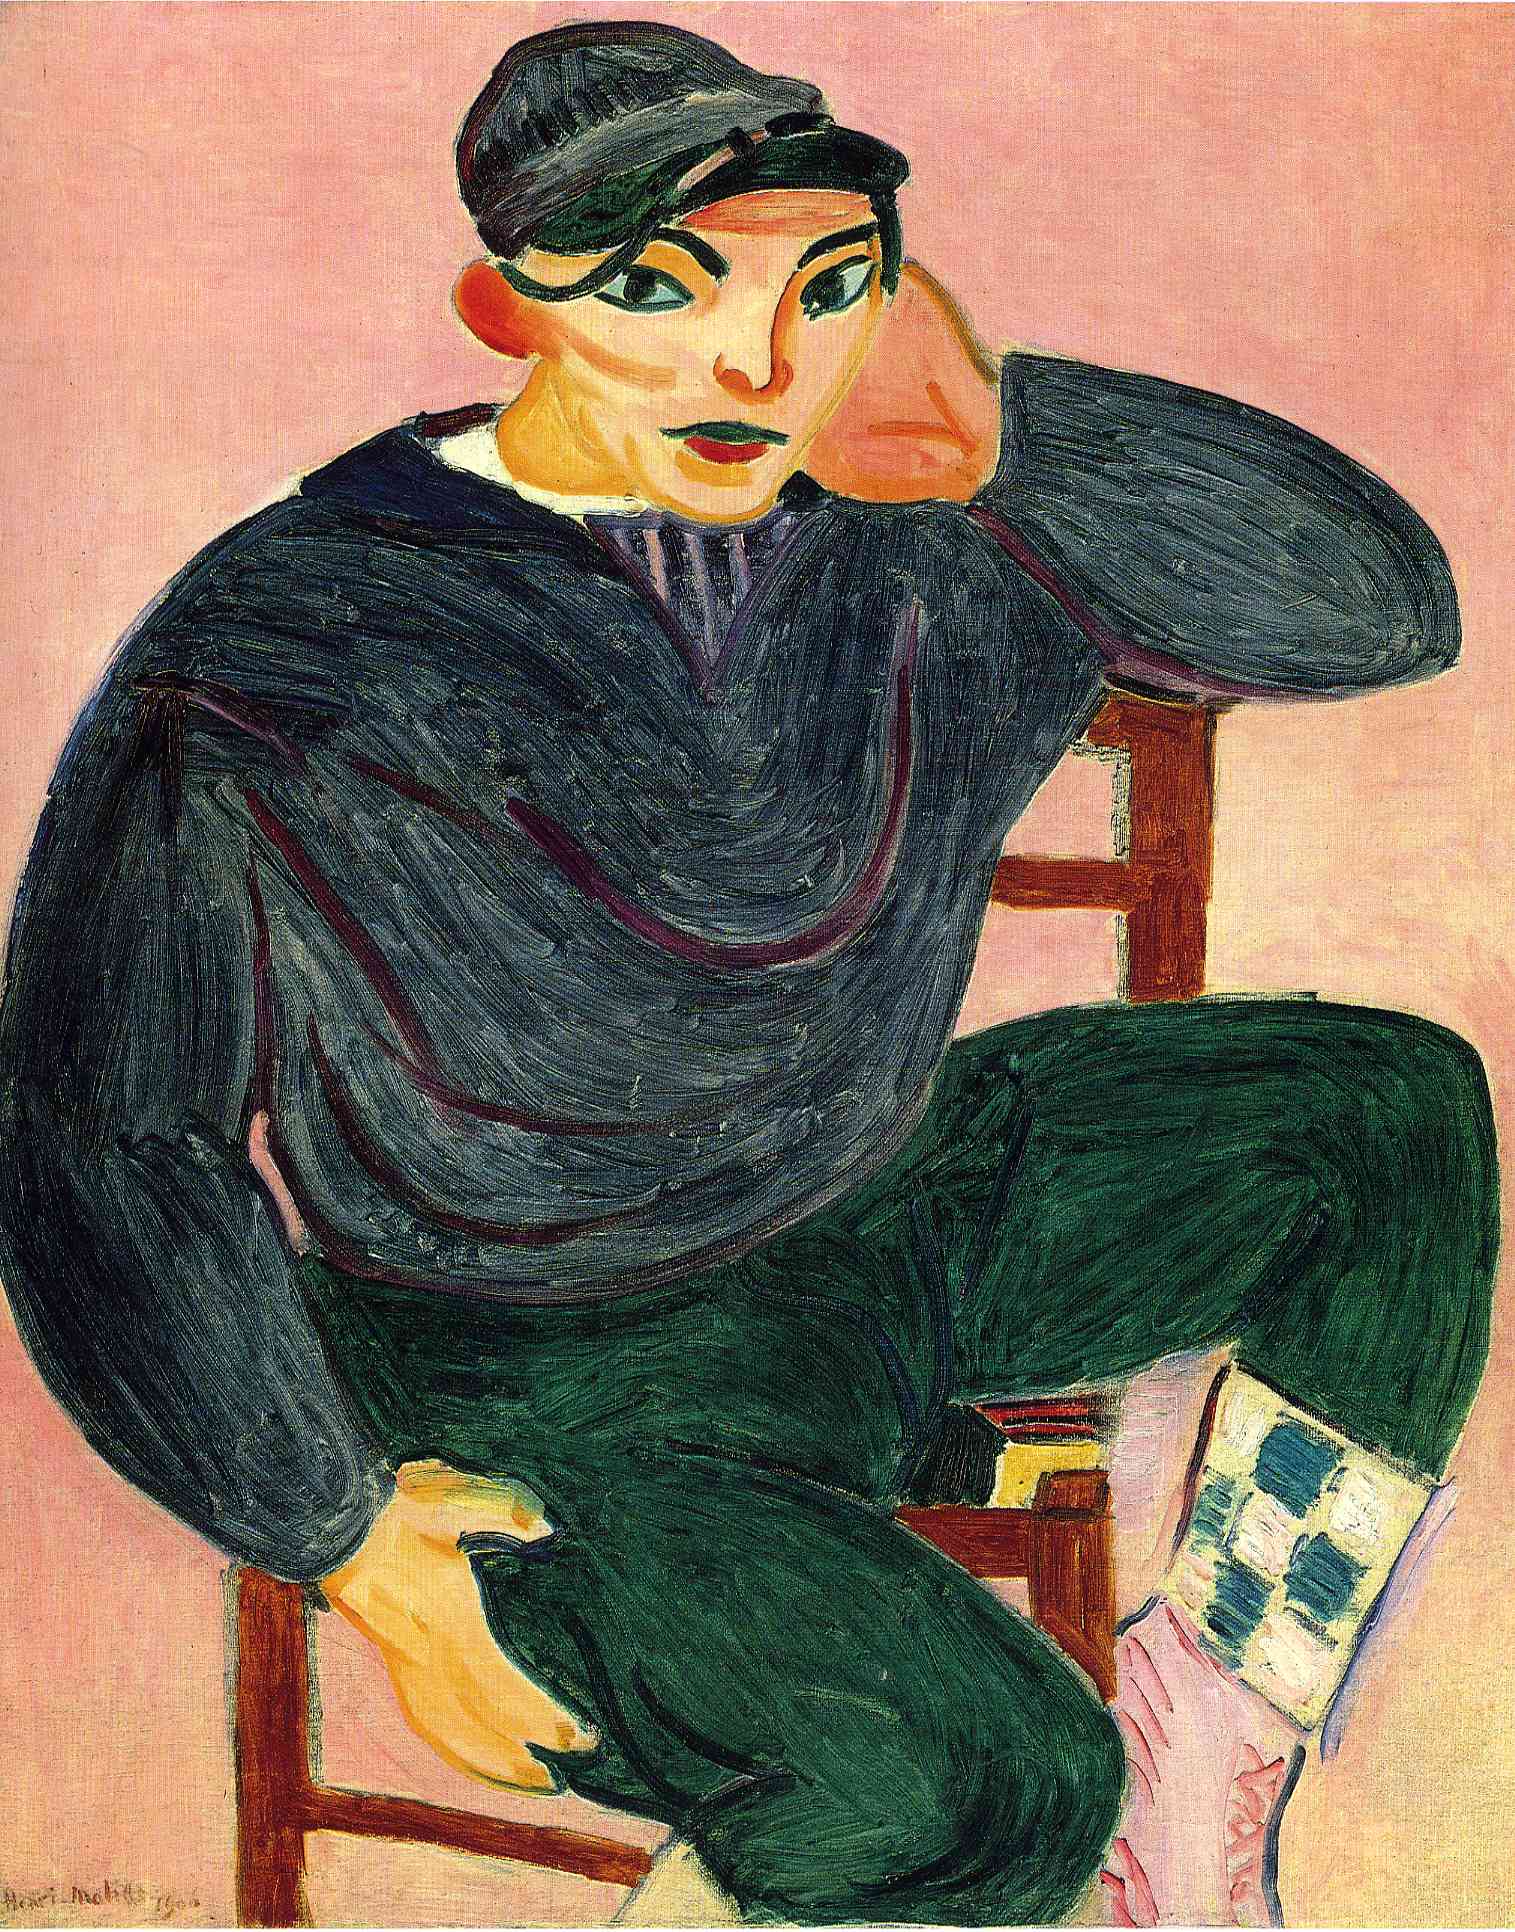 Il giovane marinaio II by Henri Matisse - 1906 - 100 x 81 cm collezione privata